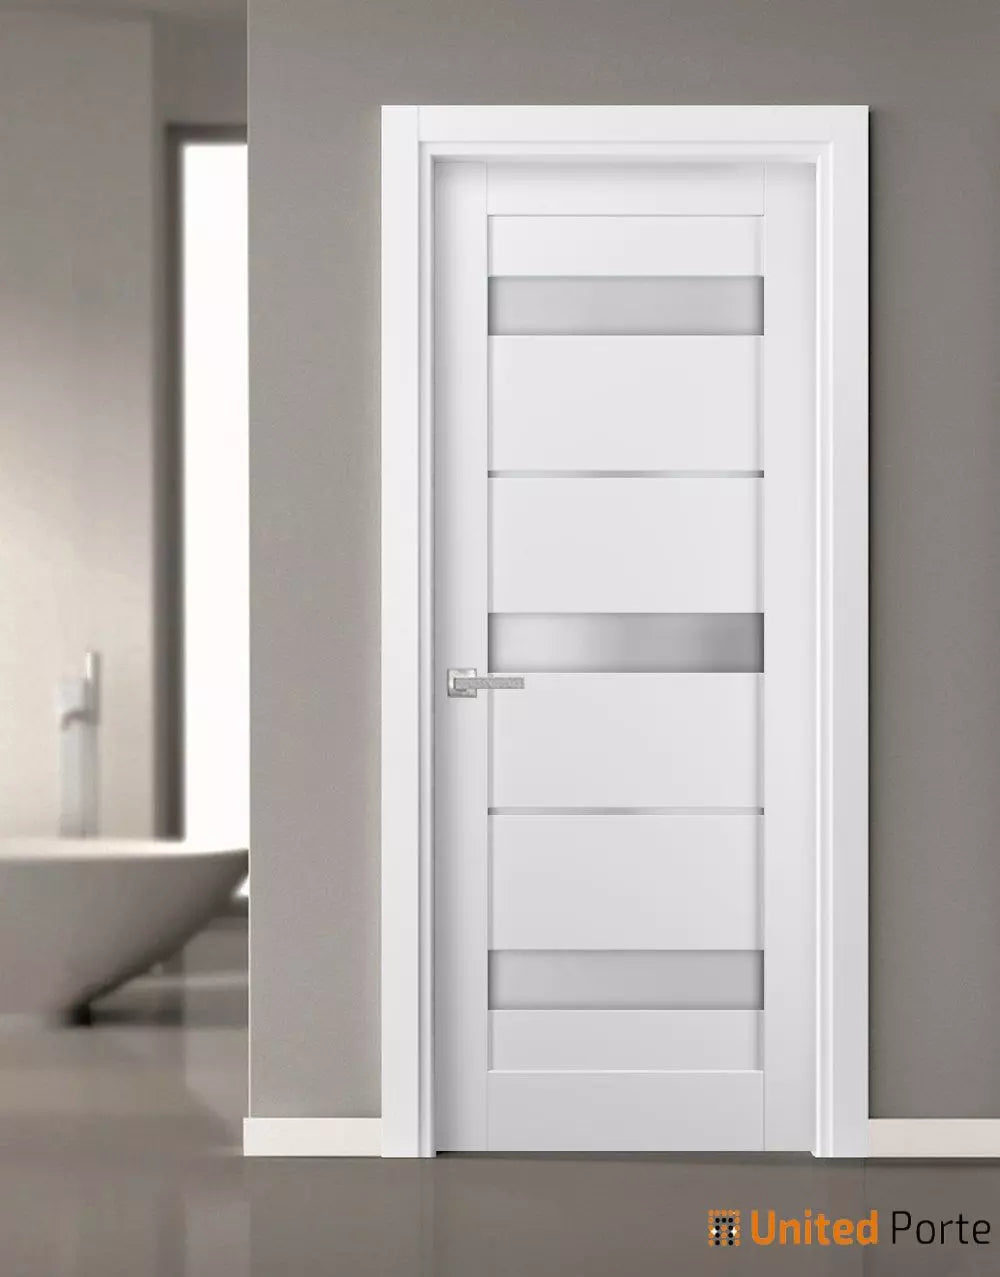 French Panel Lite Doors with Frosted Opaque Glass | Bathroom Bedroom Sturdy Doors | Buy Doors Online